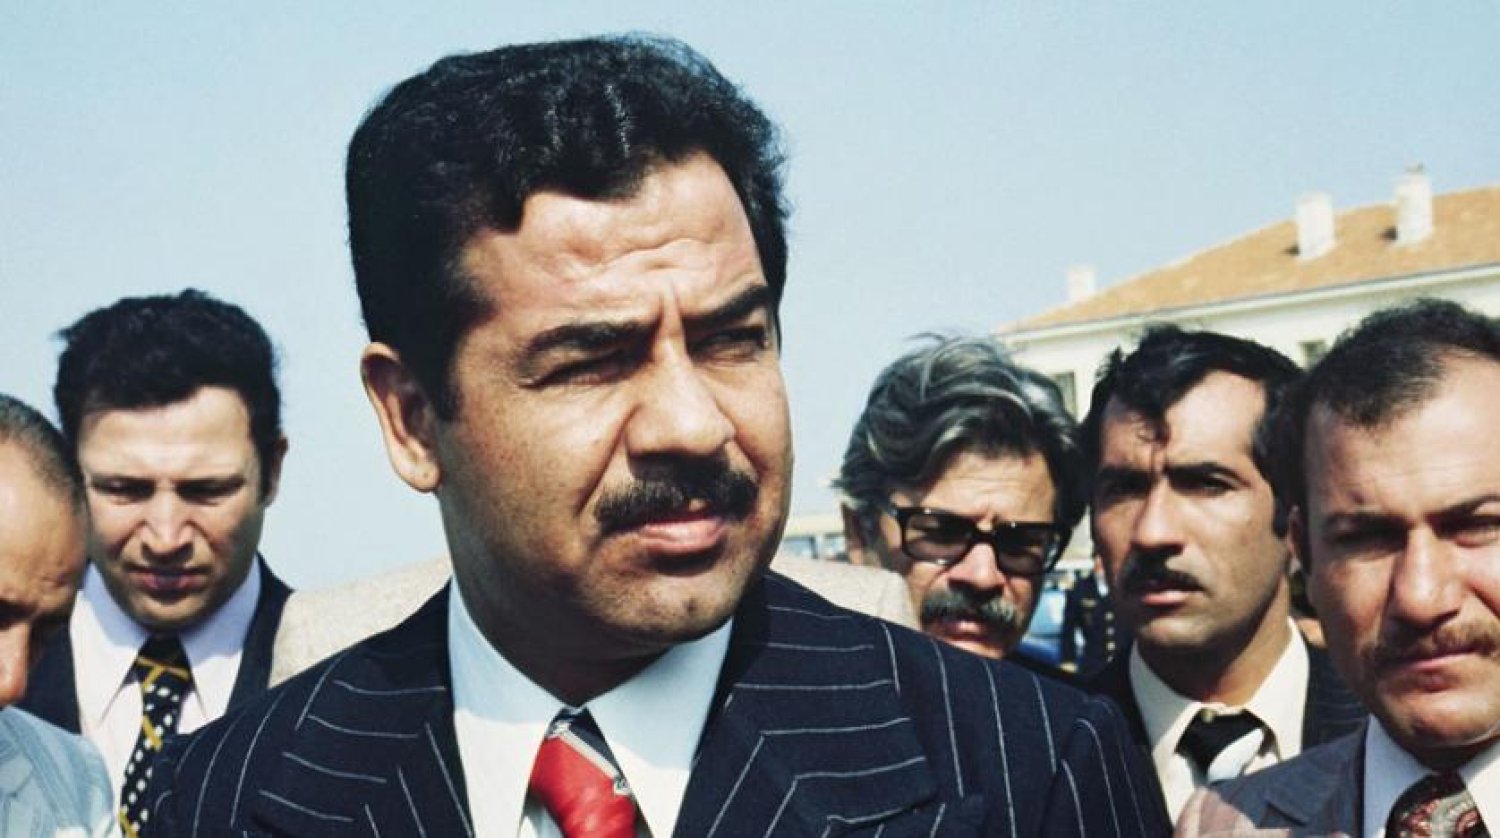 Amo Saddam